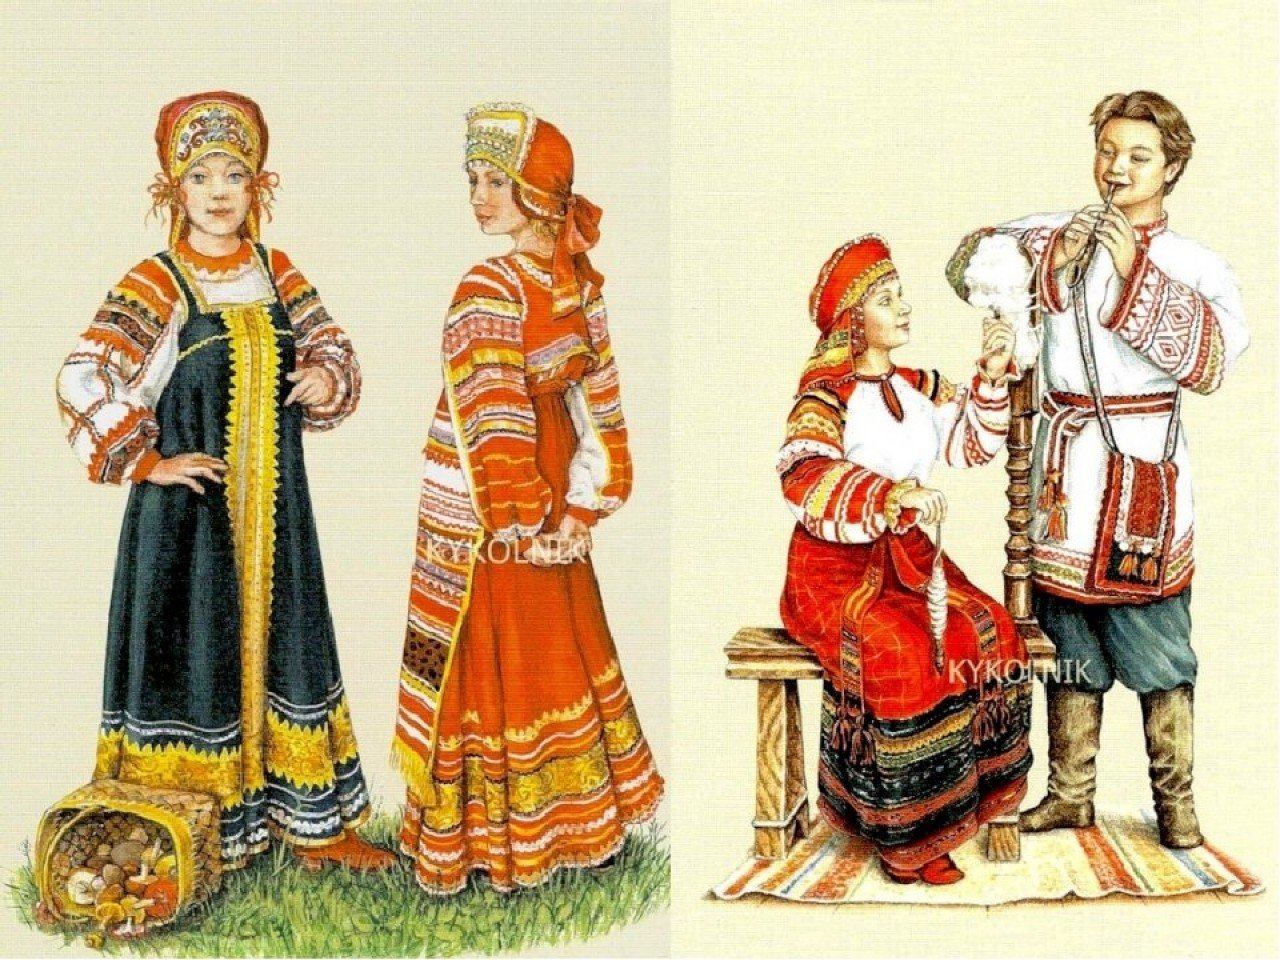 История костюмов в россии